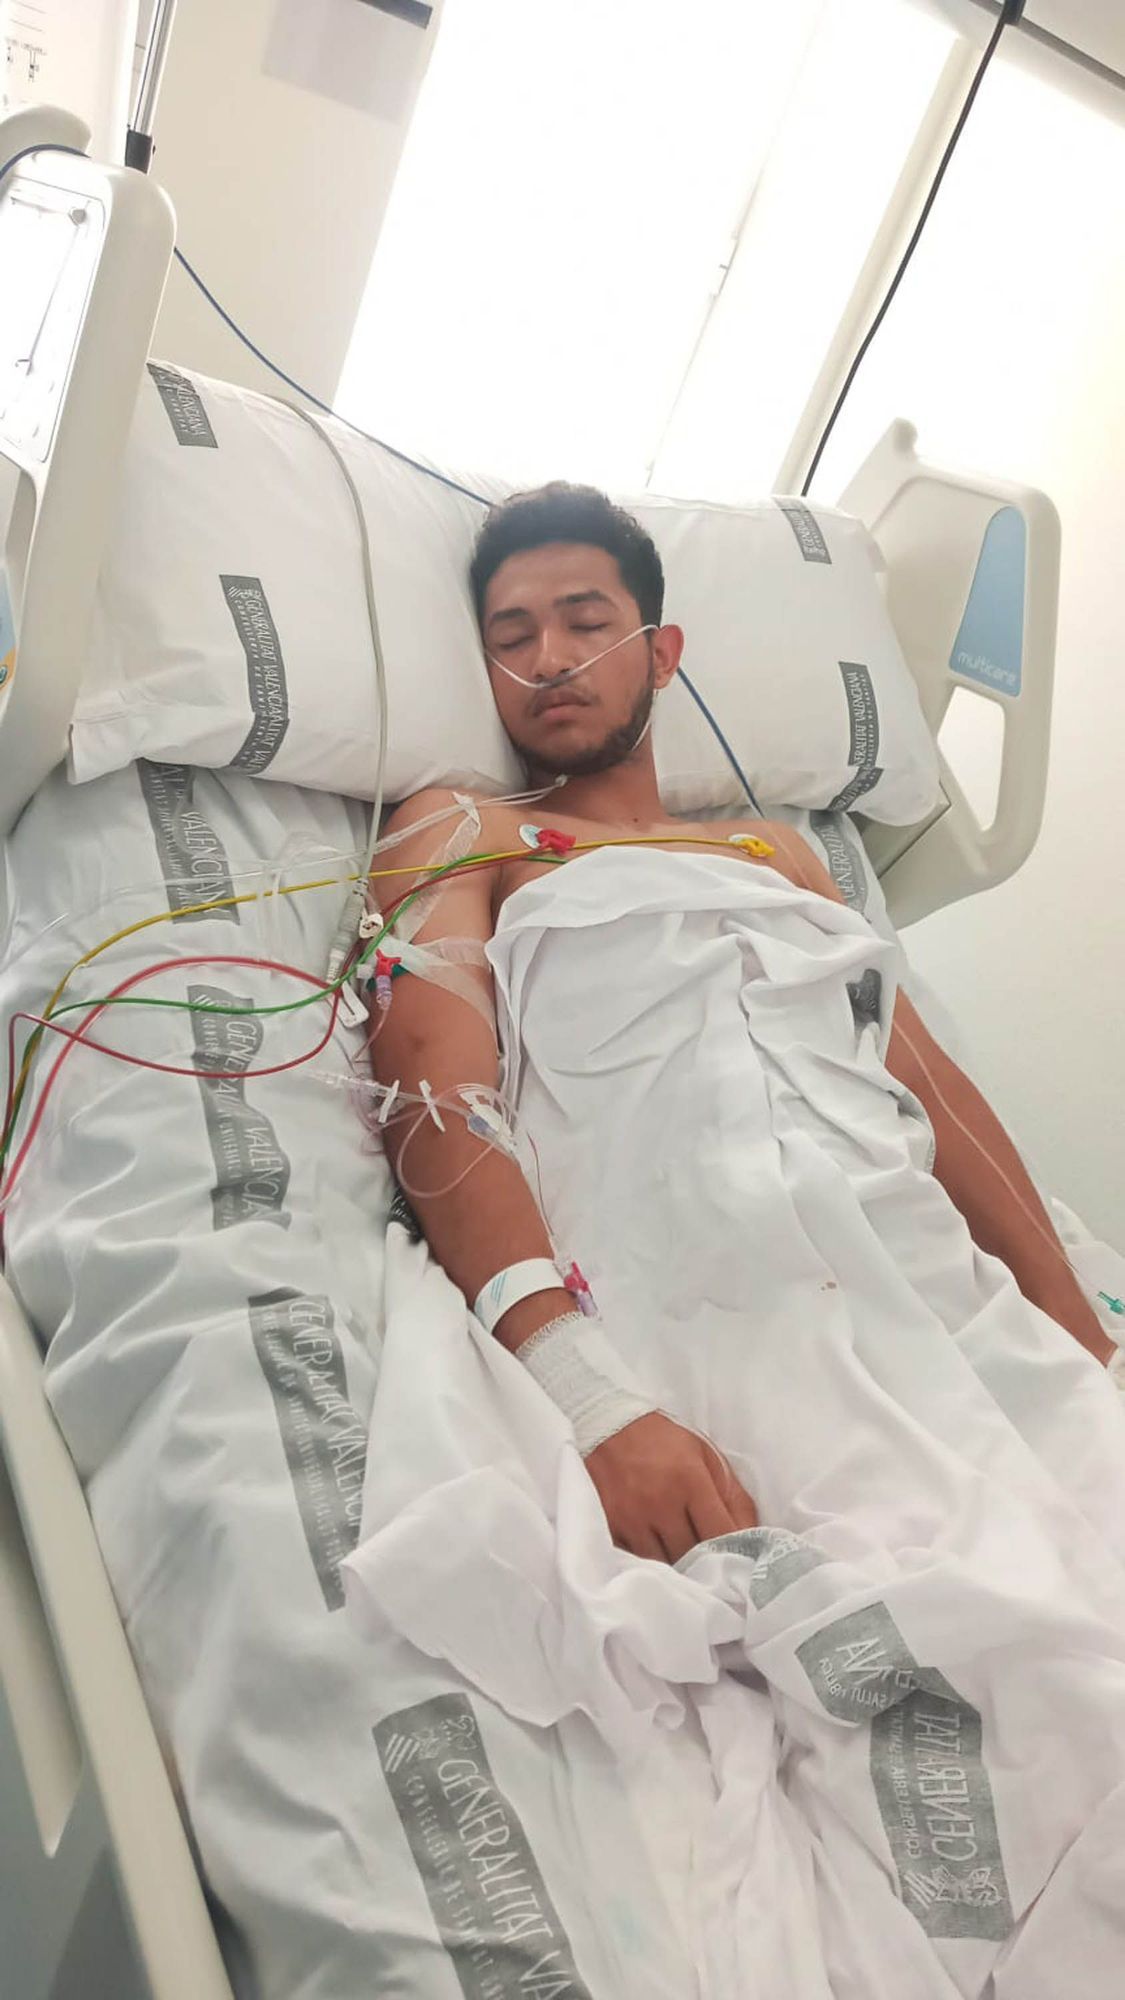 Diego, en el hospital tras ser operado.